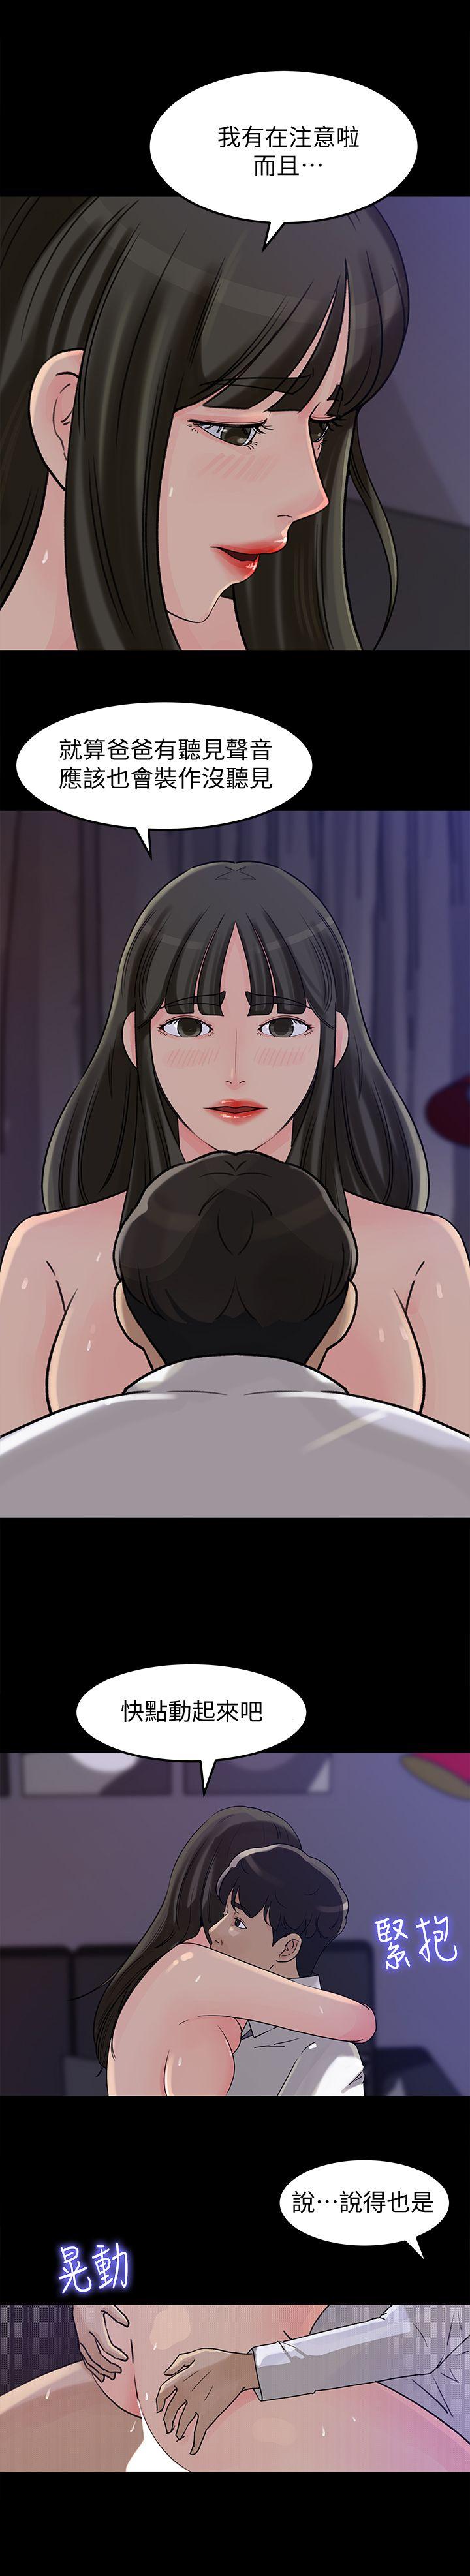 《媳妇的诱惑》漫画 第12话-沉睡中的媳妇